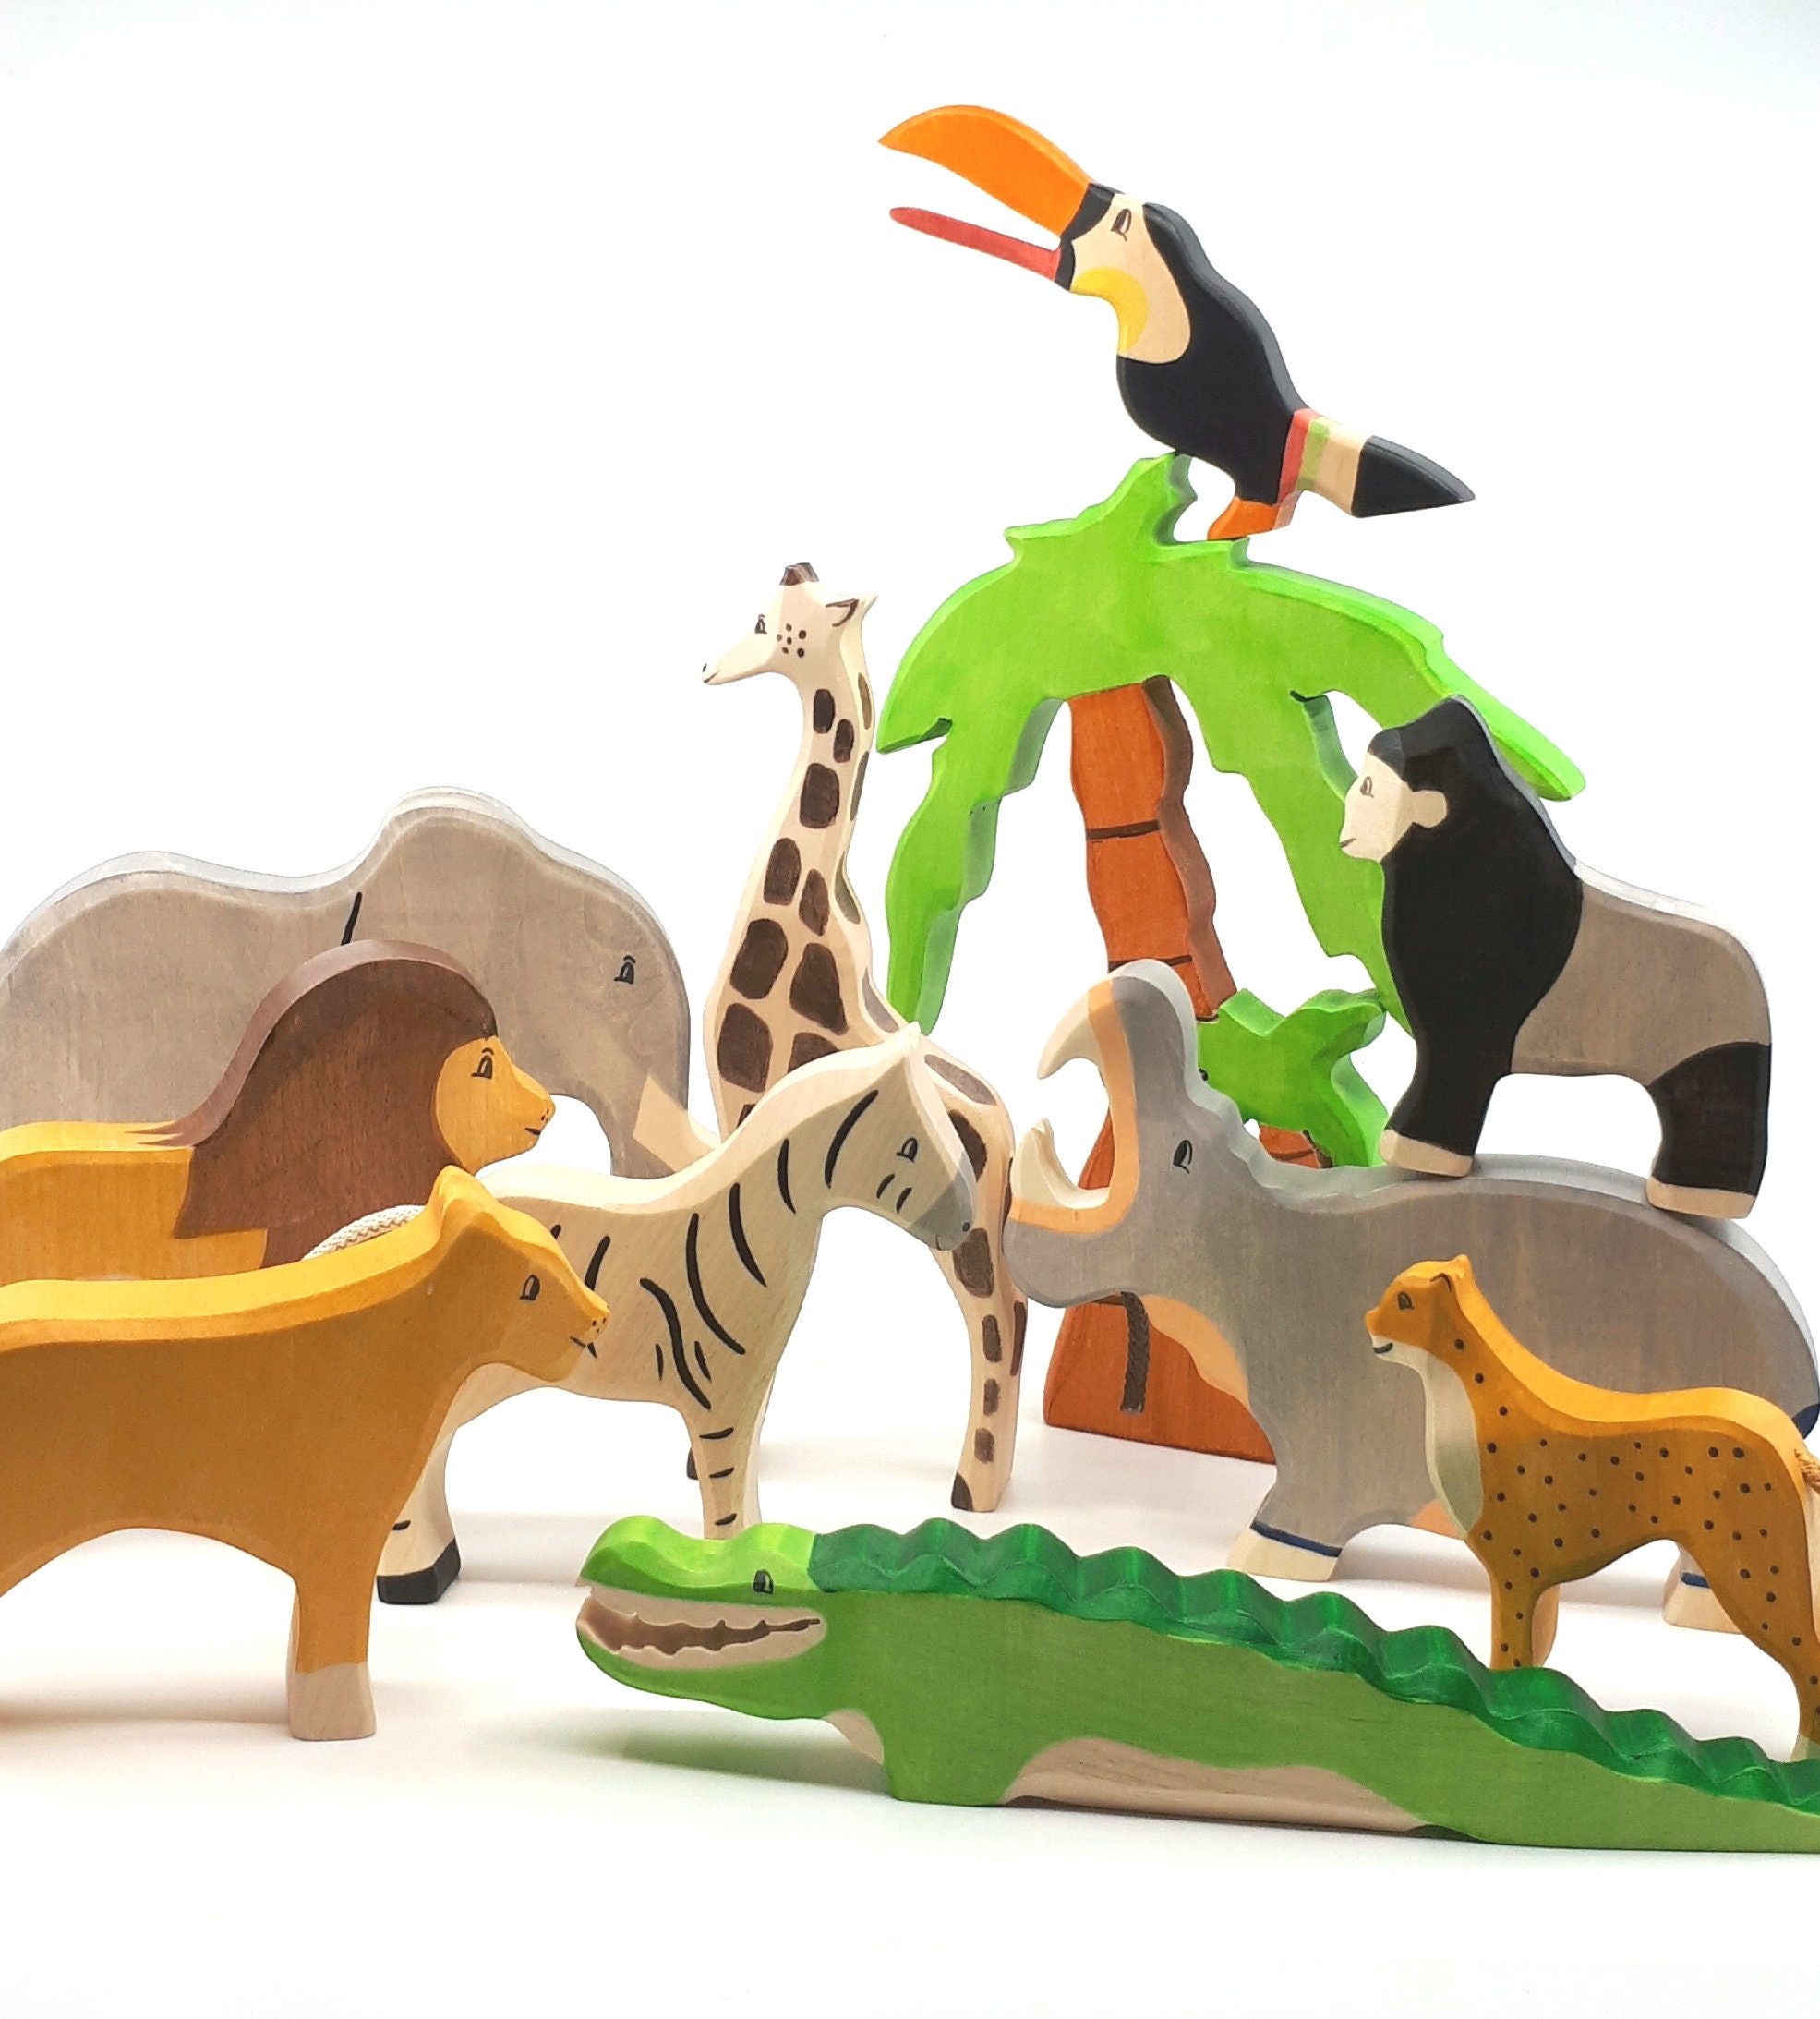 safari animal toy set